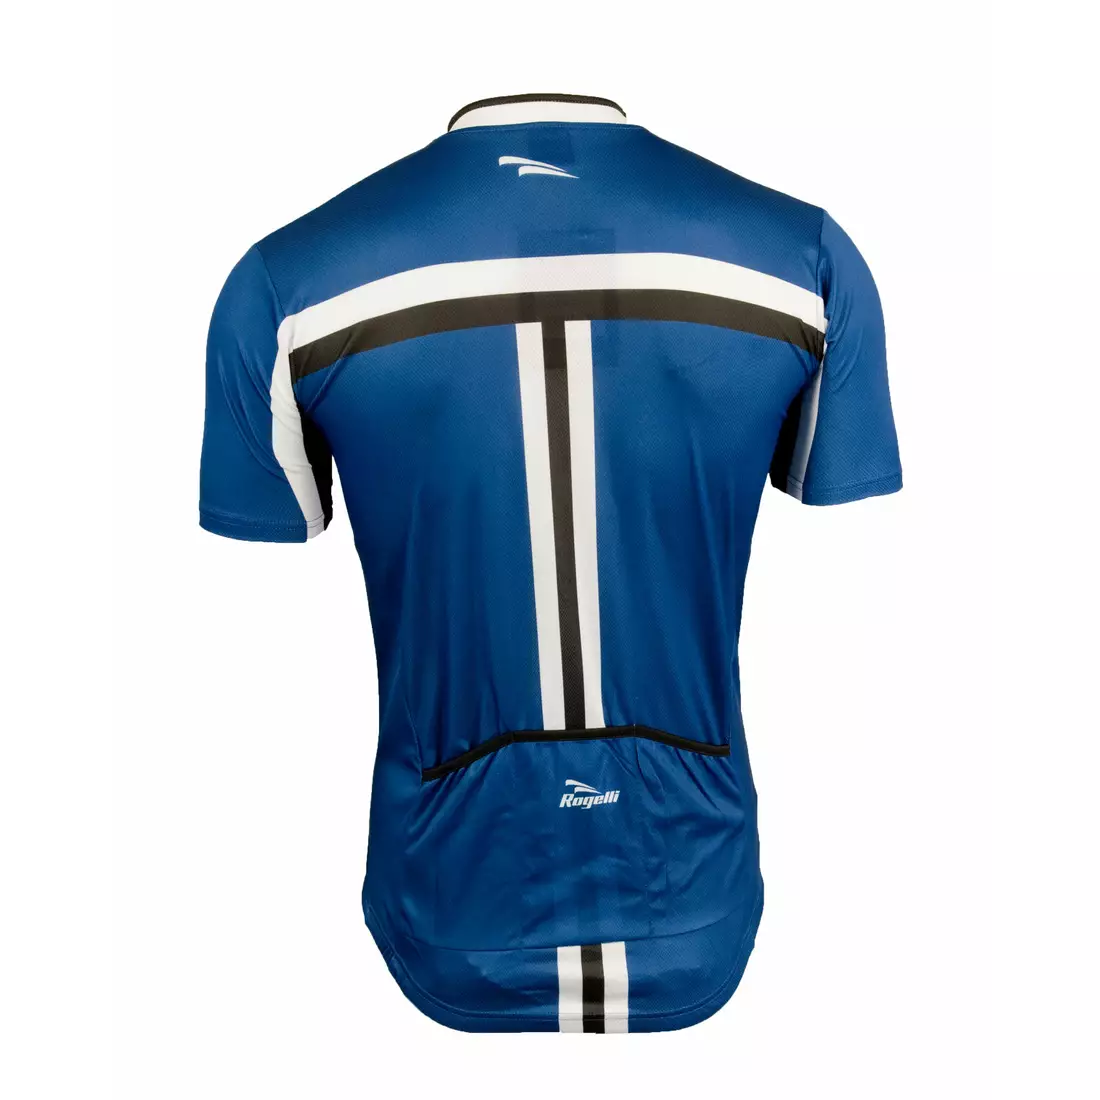 ROGELLI BRESCIA pánsky cyklistický dres 001.065, Modrý